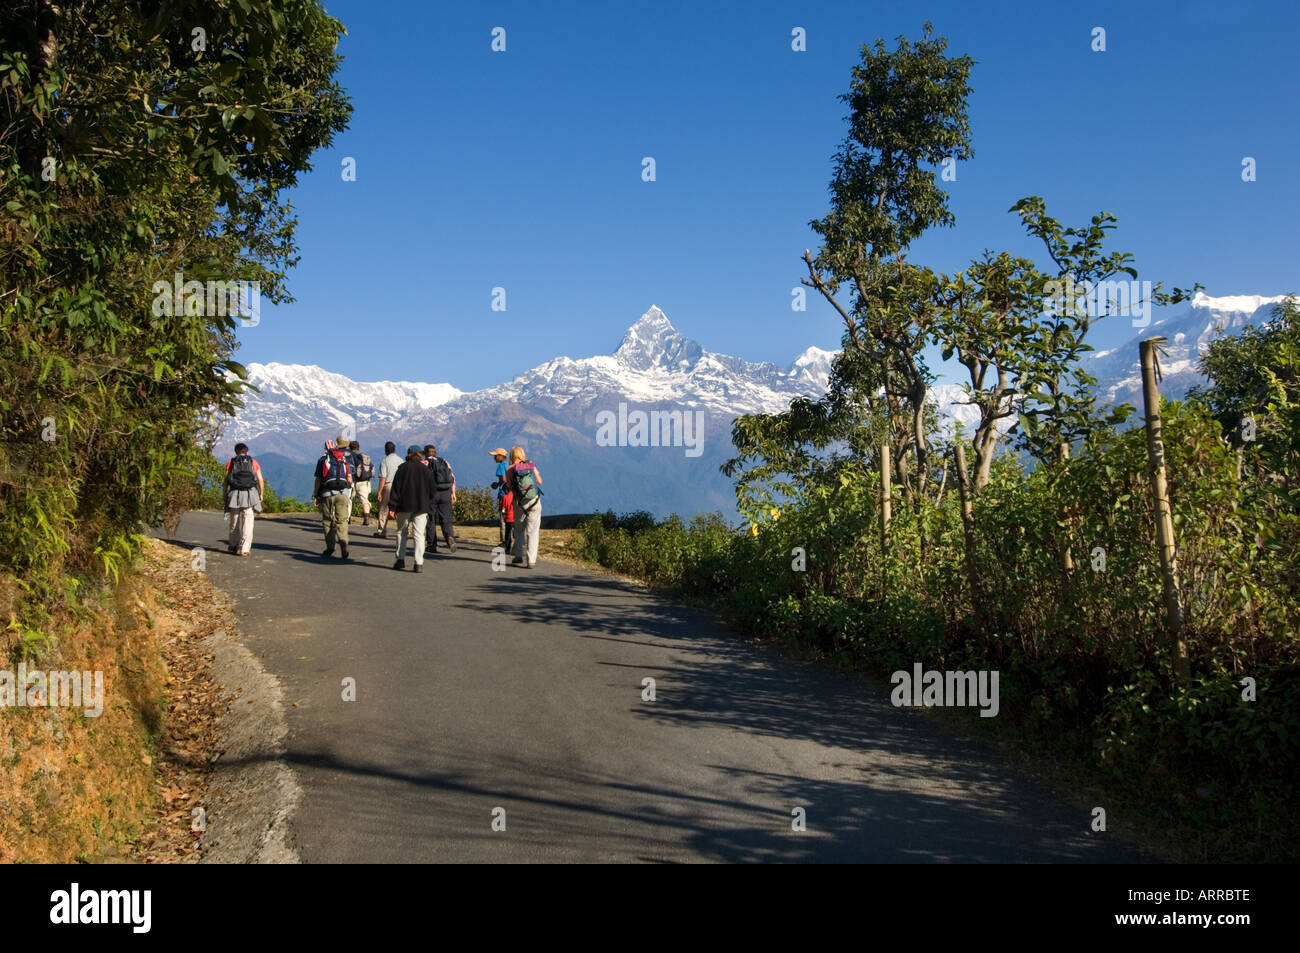 Les touristes étant enseignées sur trekking paysage nature par guide népalais Pokhara Népal Himalaya Machhapuchare outlook sarangkot Banque D'Images